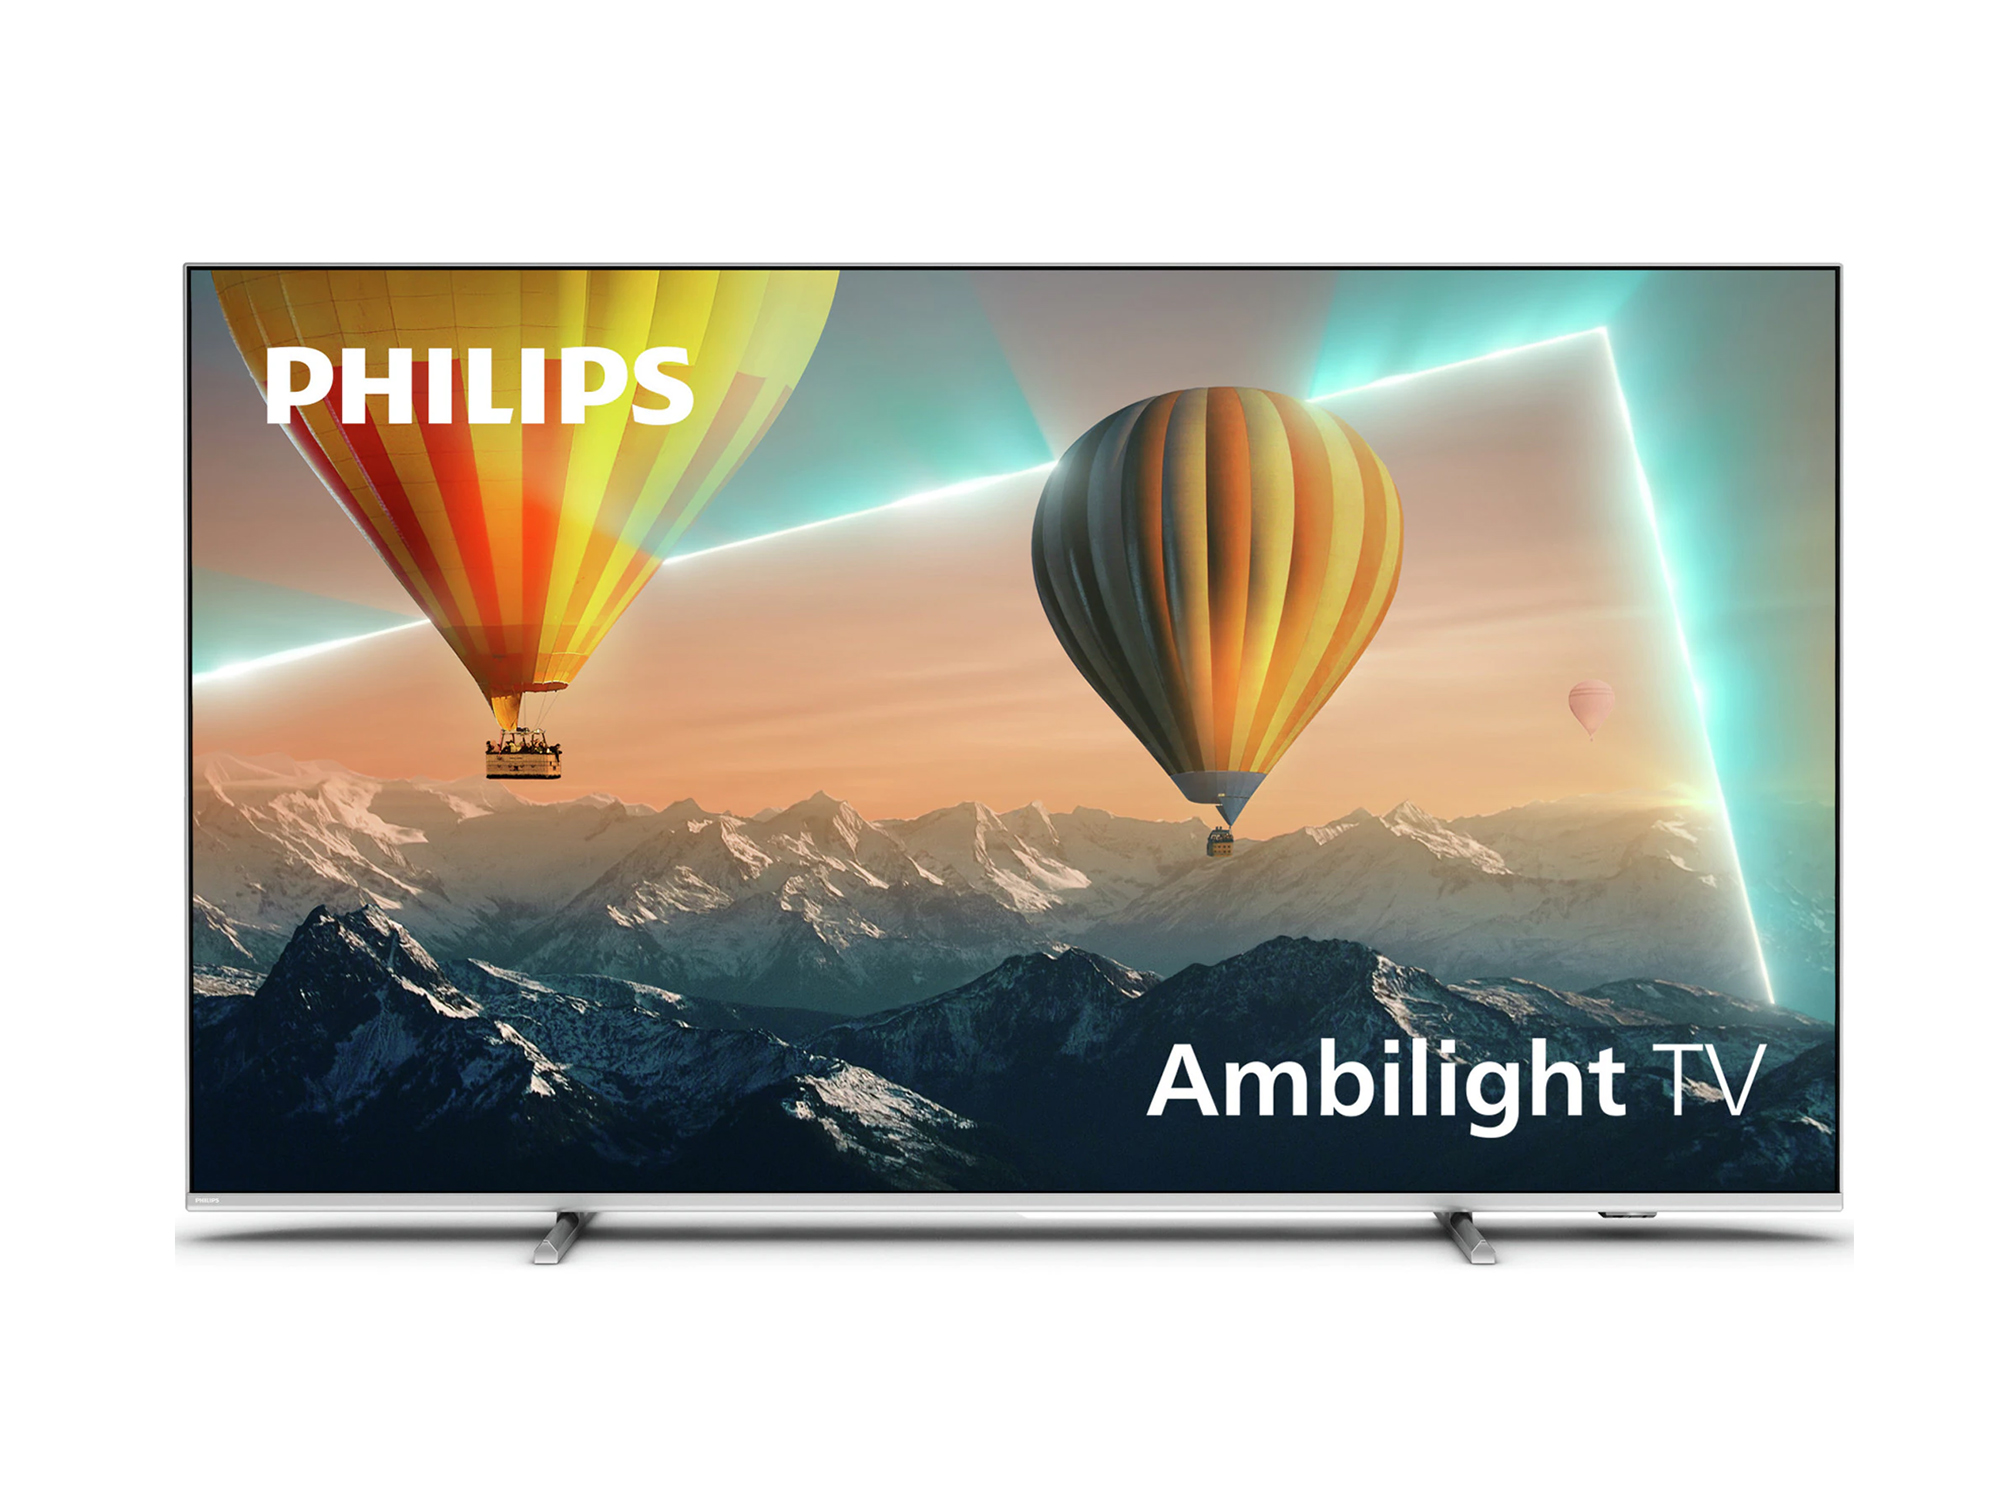  UHD LED ANDROID TV PHILIPS 65PUS8057 #philips5godina